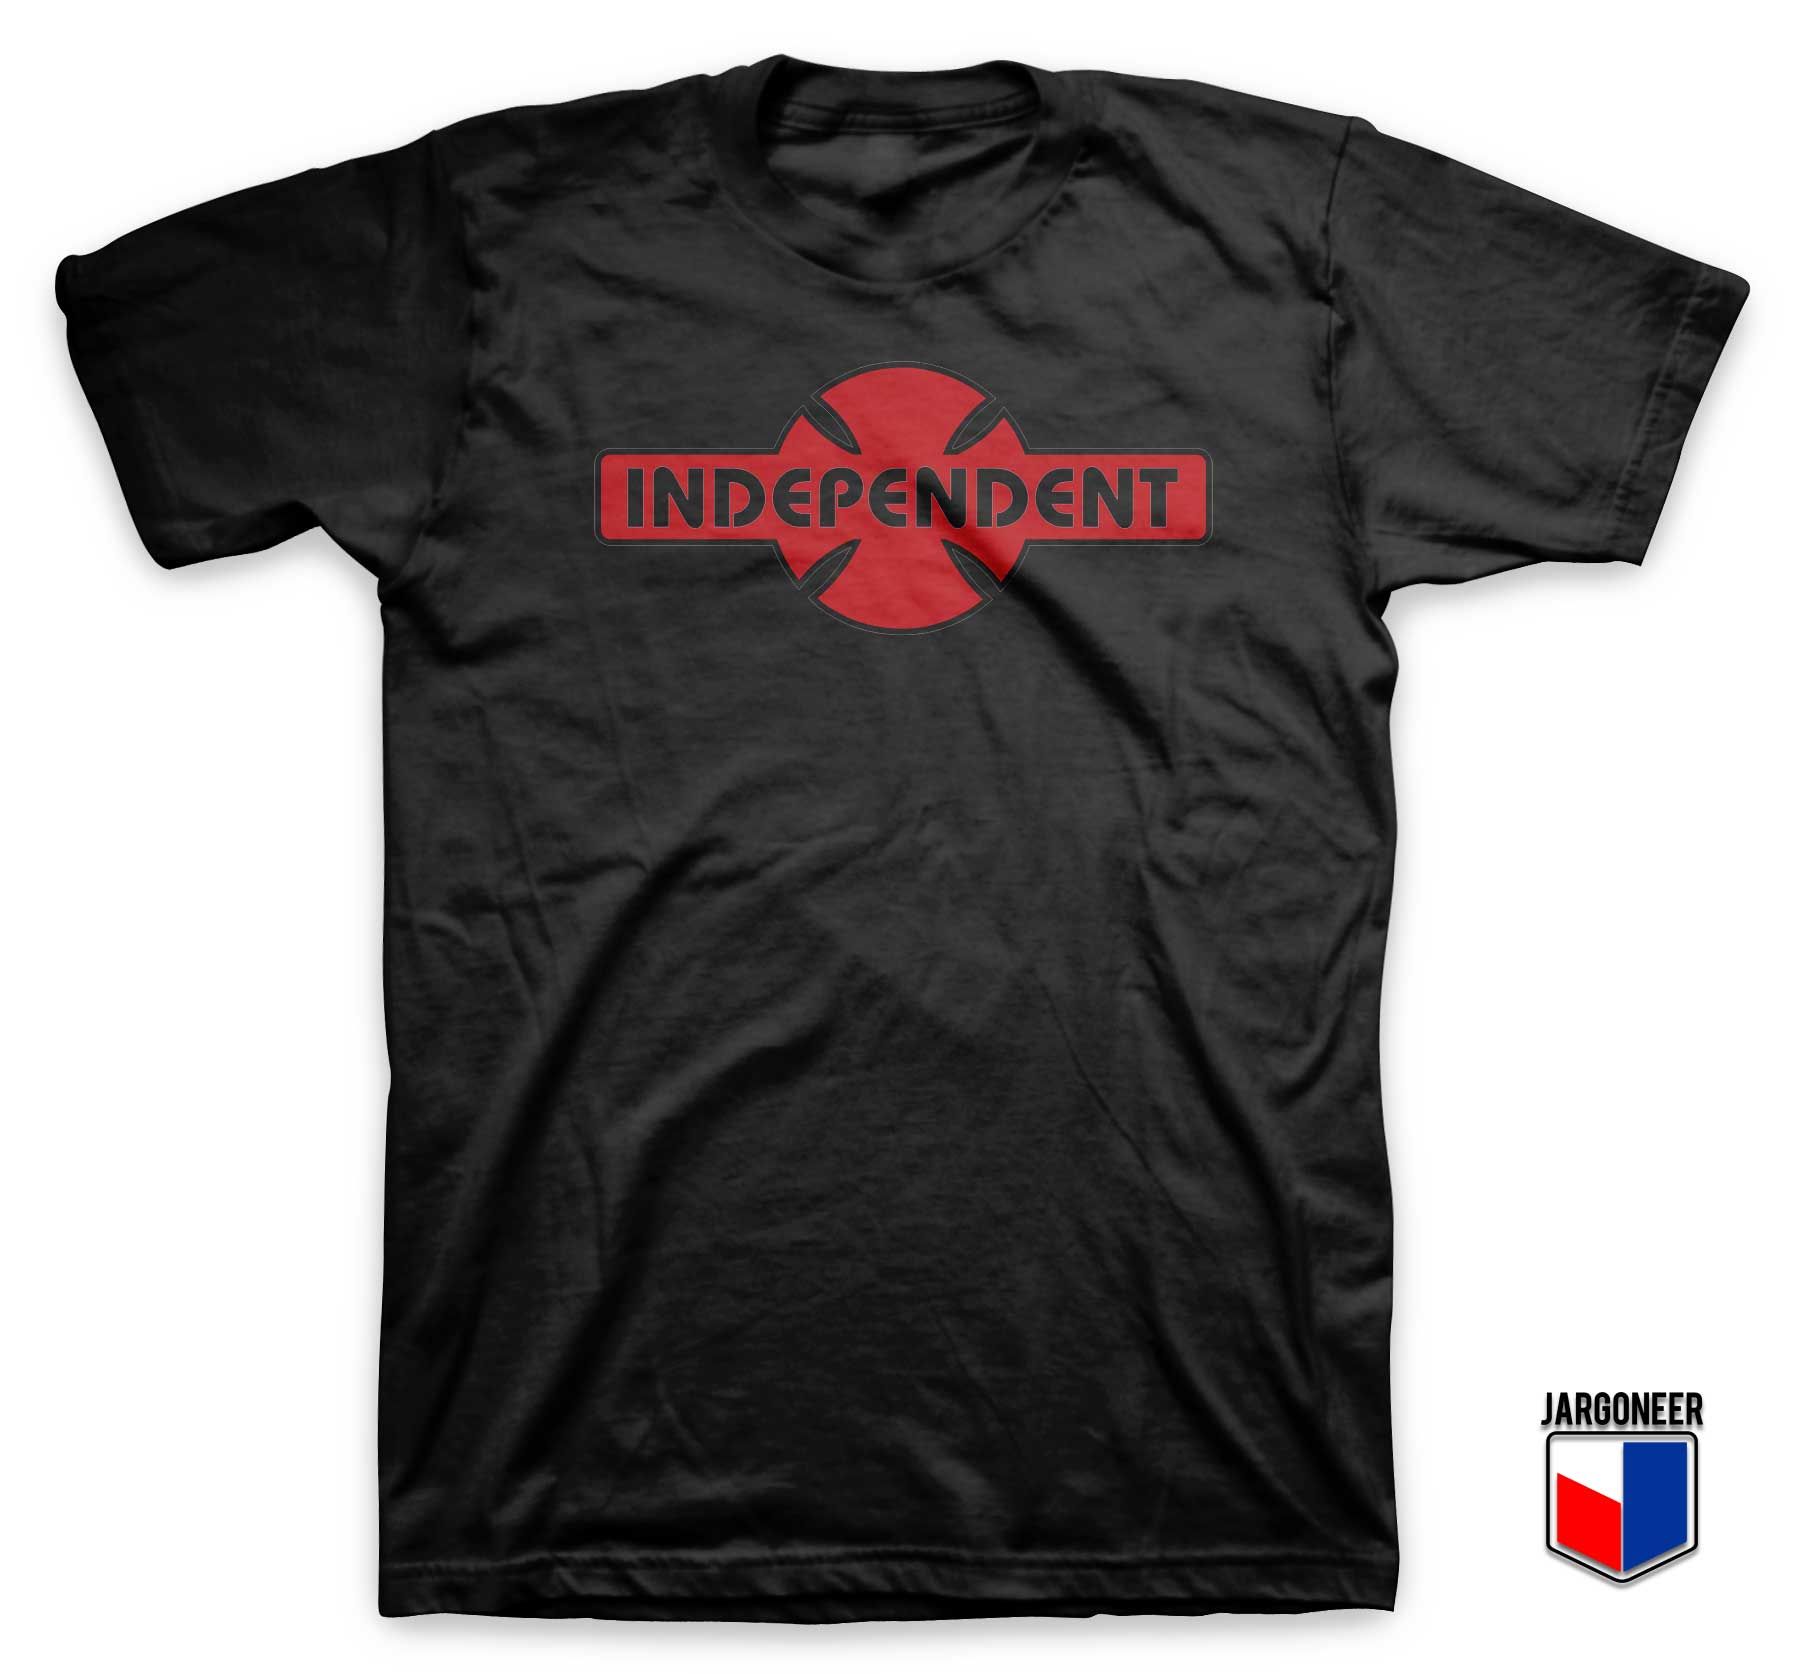 Independet Truck Logo T Shirt - Shop Unique Graphic Cool Shirt Designs